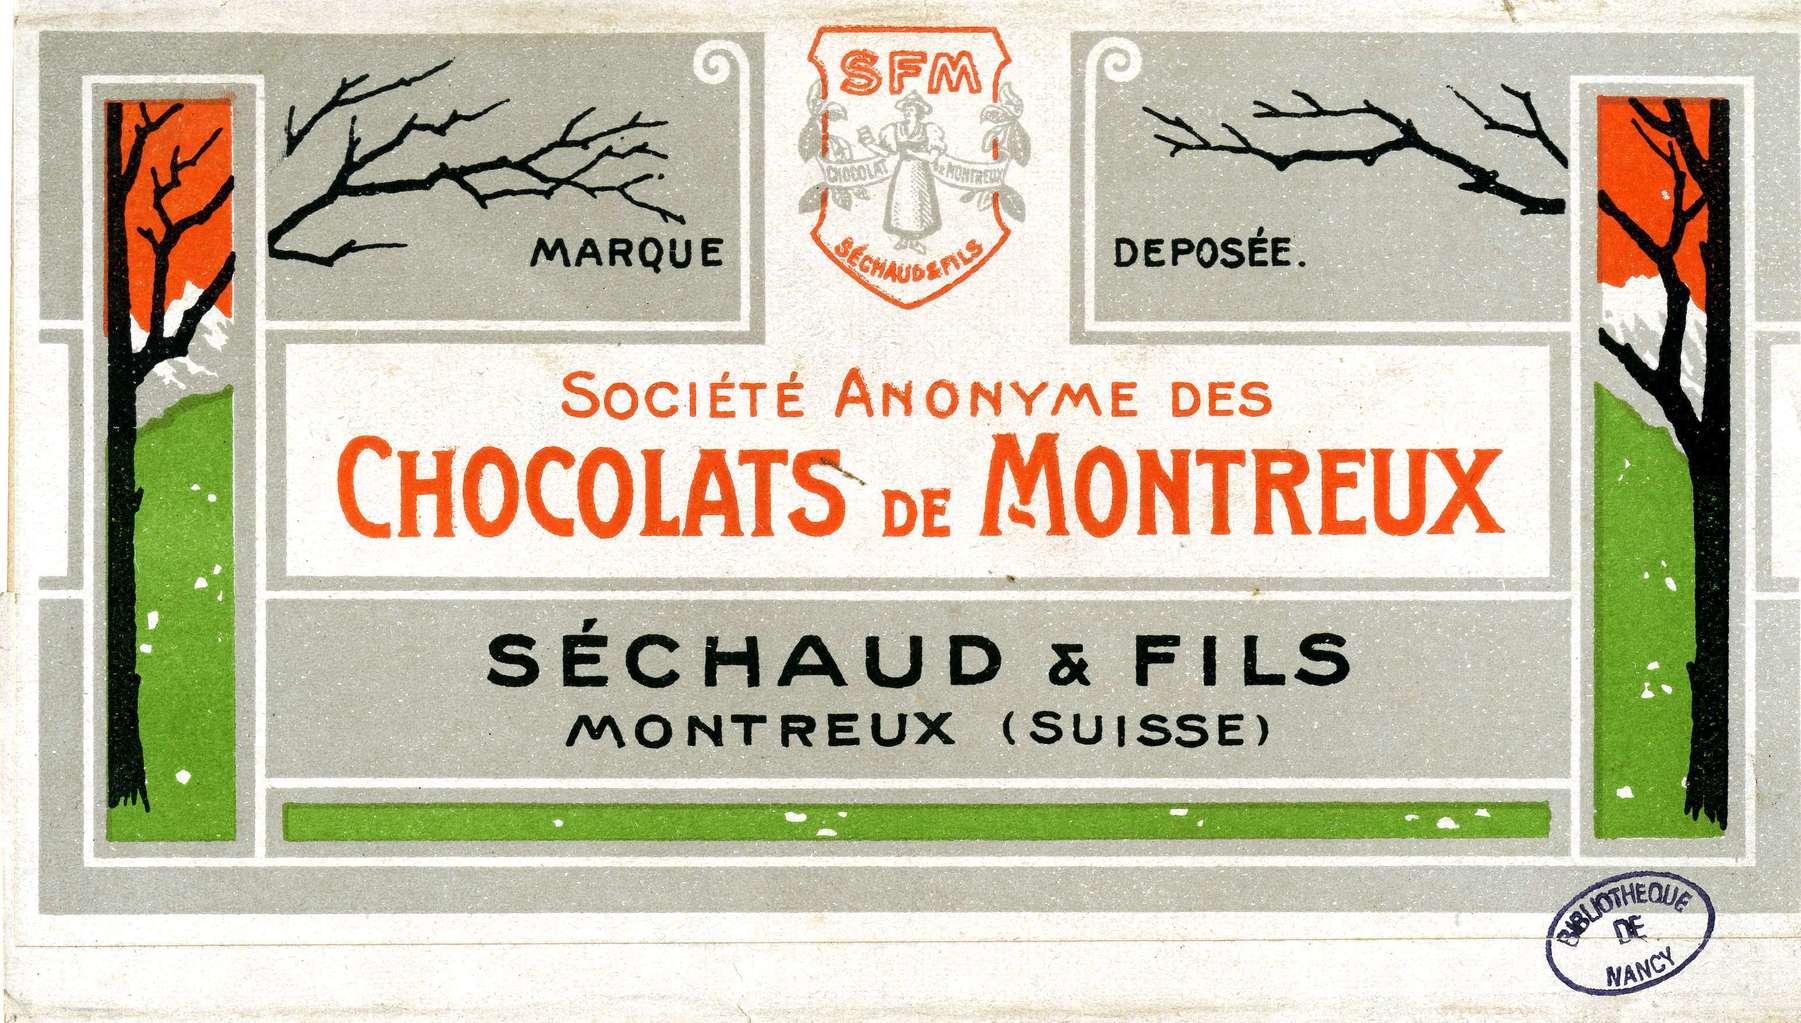 Contenu du Société anonyme des chocolats de Montreux